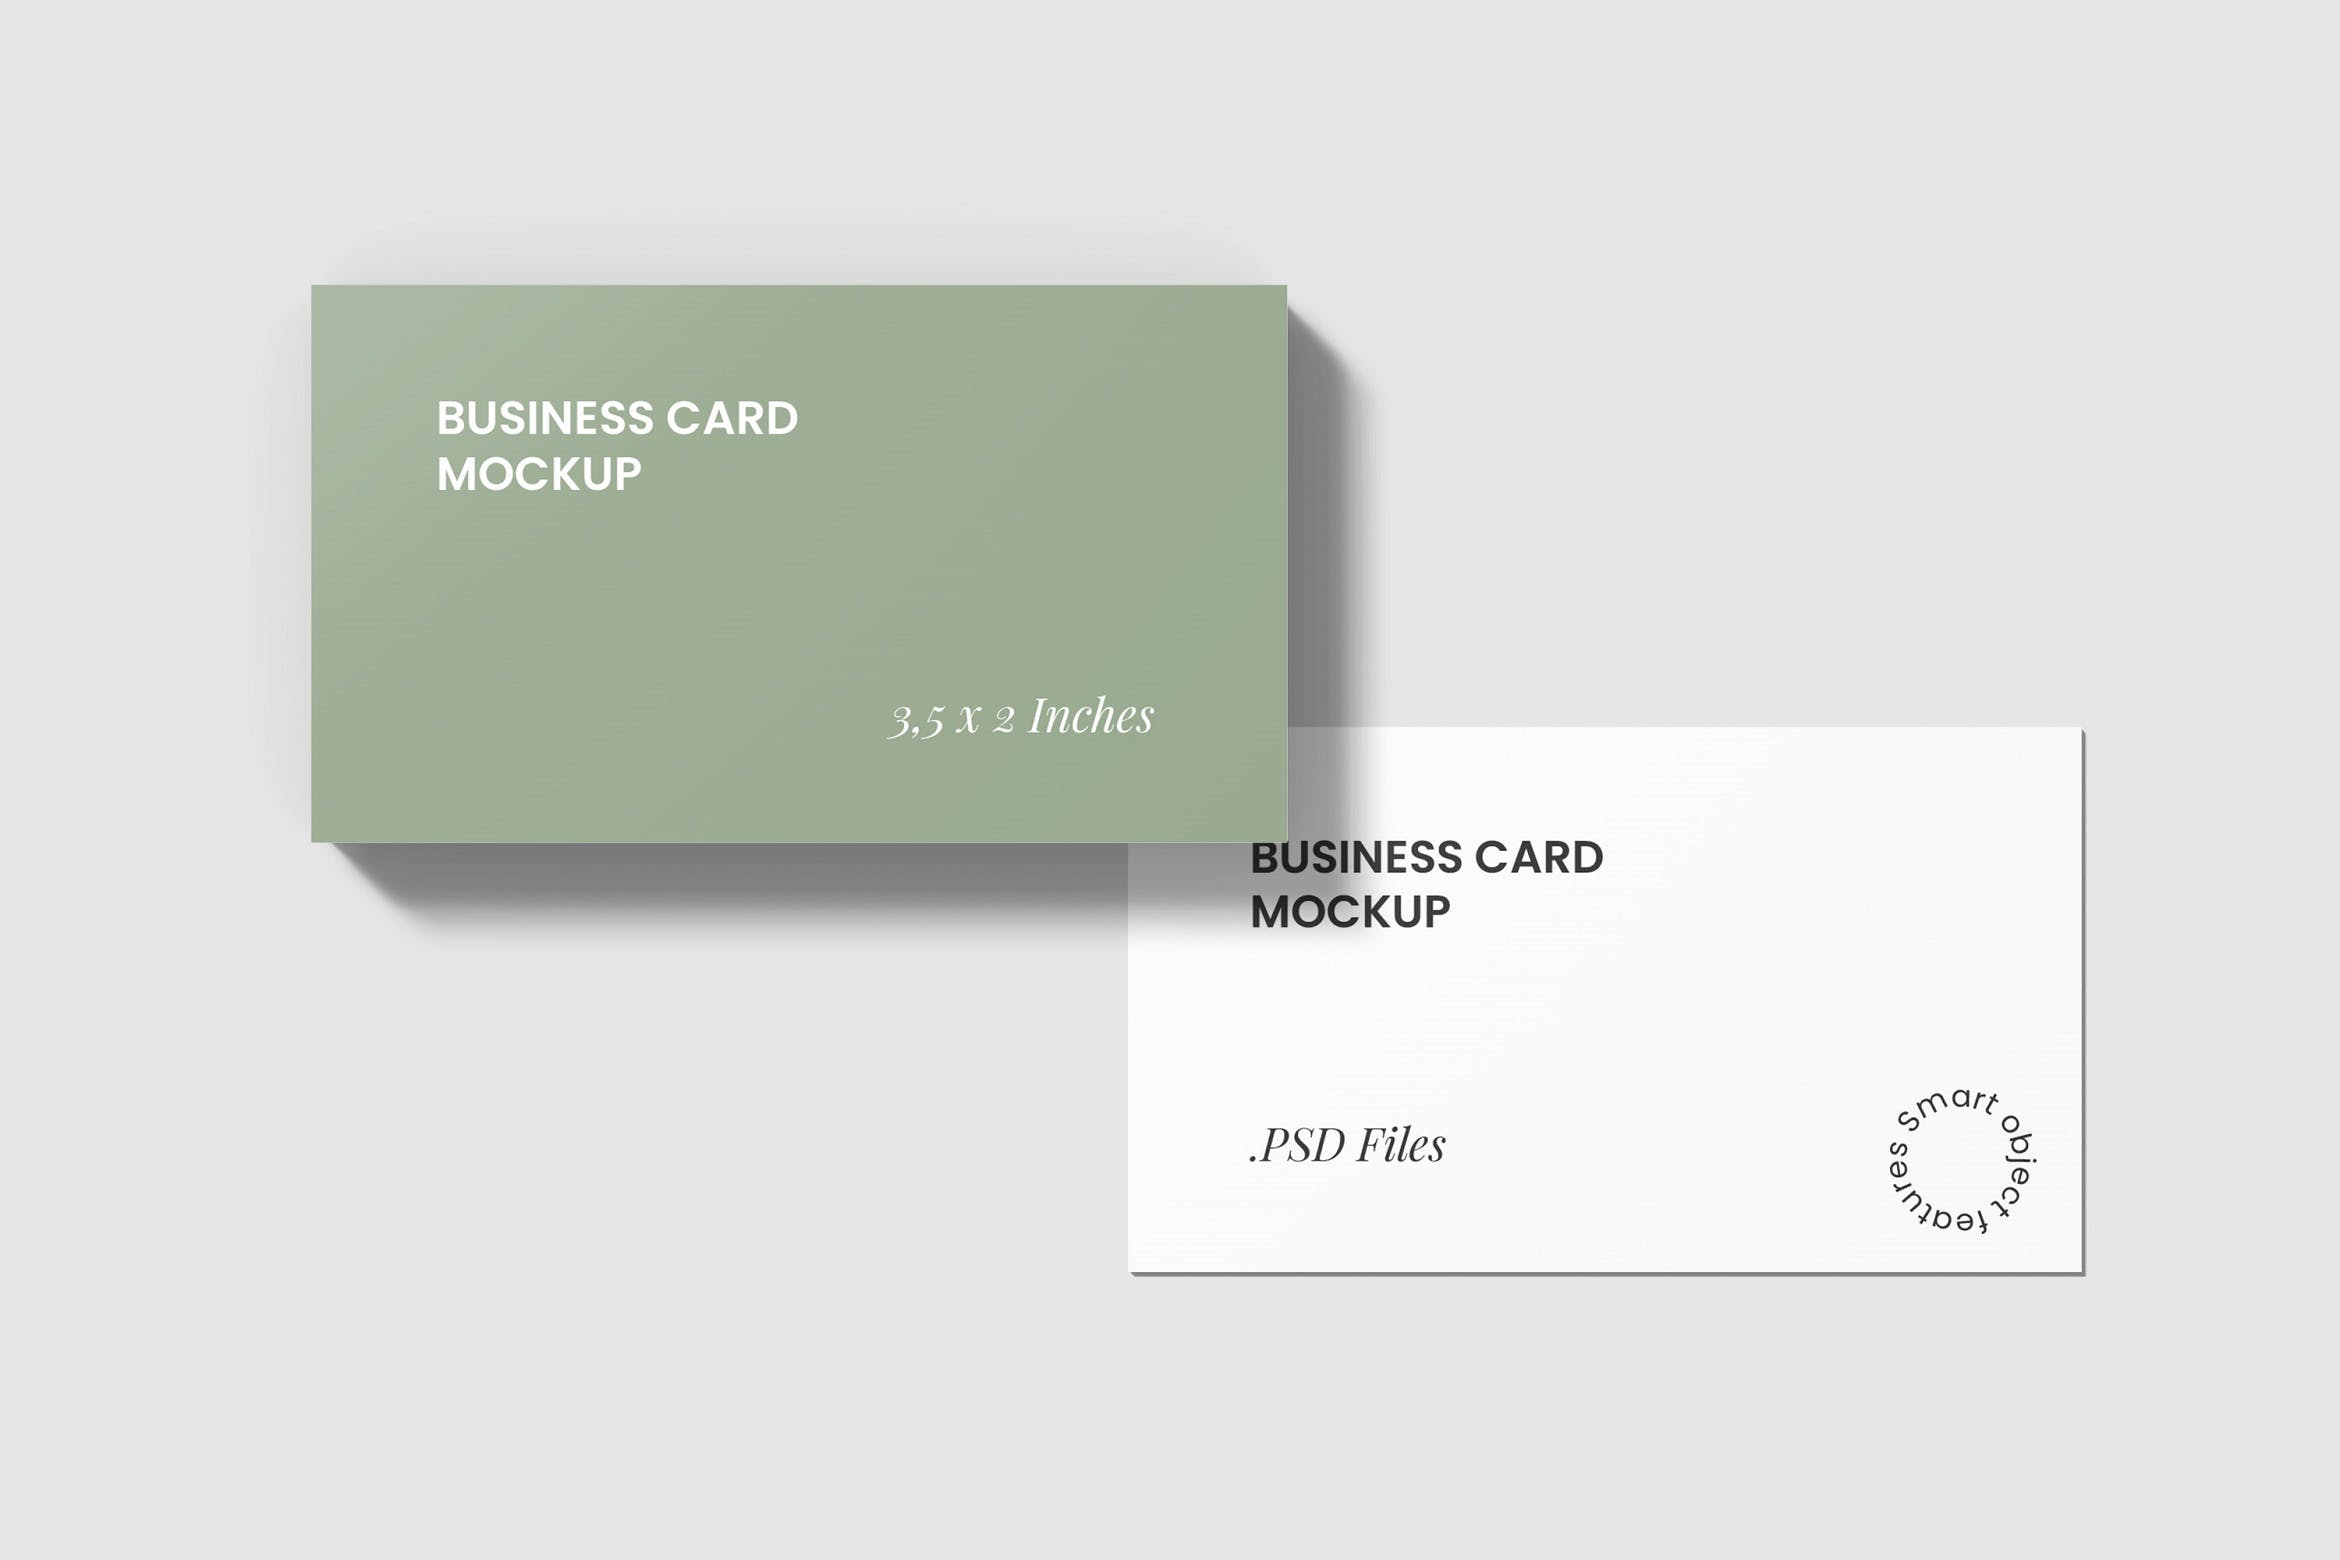 名片样机设计模板 3,5 x 2 Inches Business Card Mockup设计素材模板